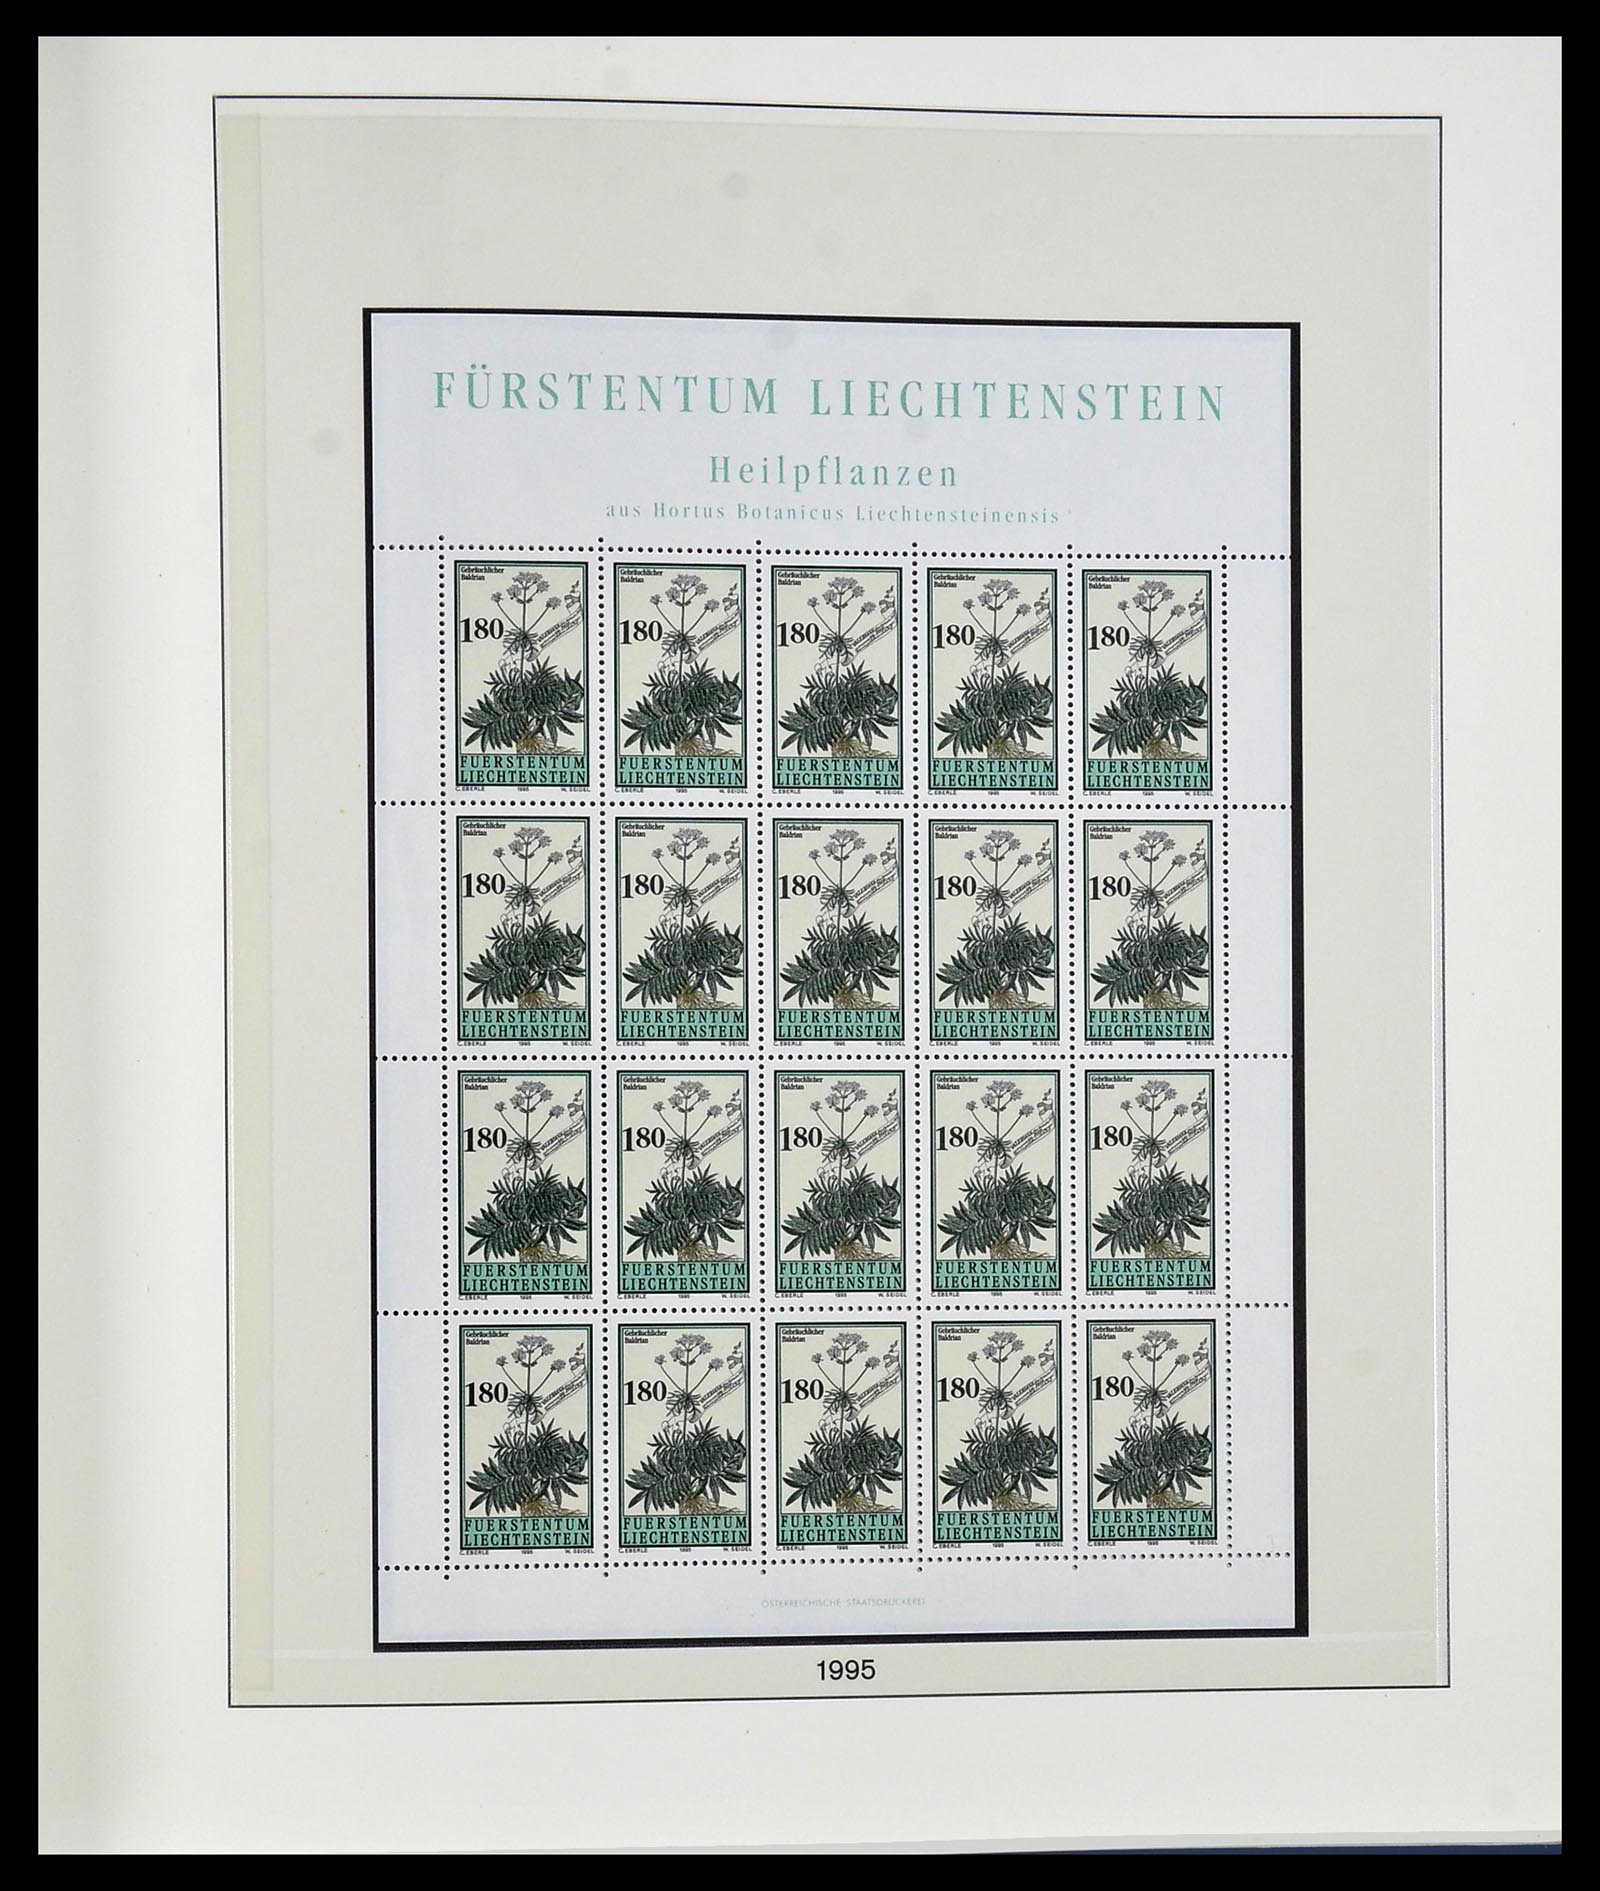 34187 311 - Stamp collection 34187 Liechtenstein kleinbogen 1982-1995.